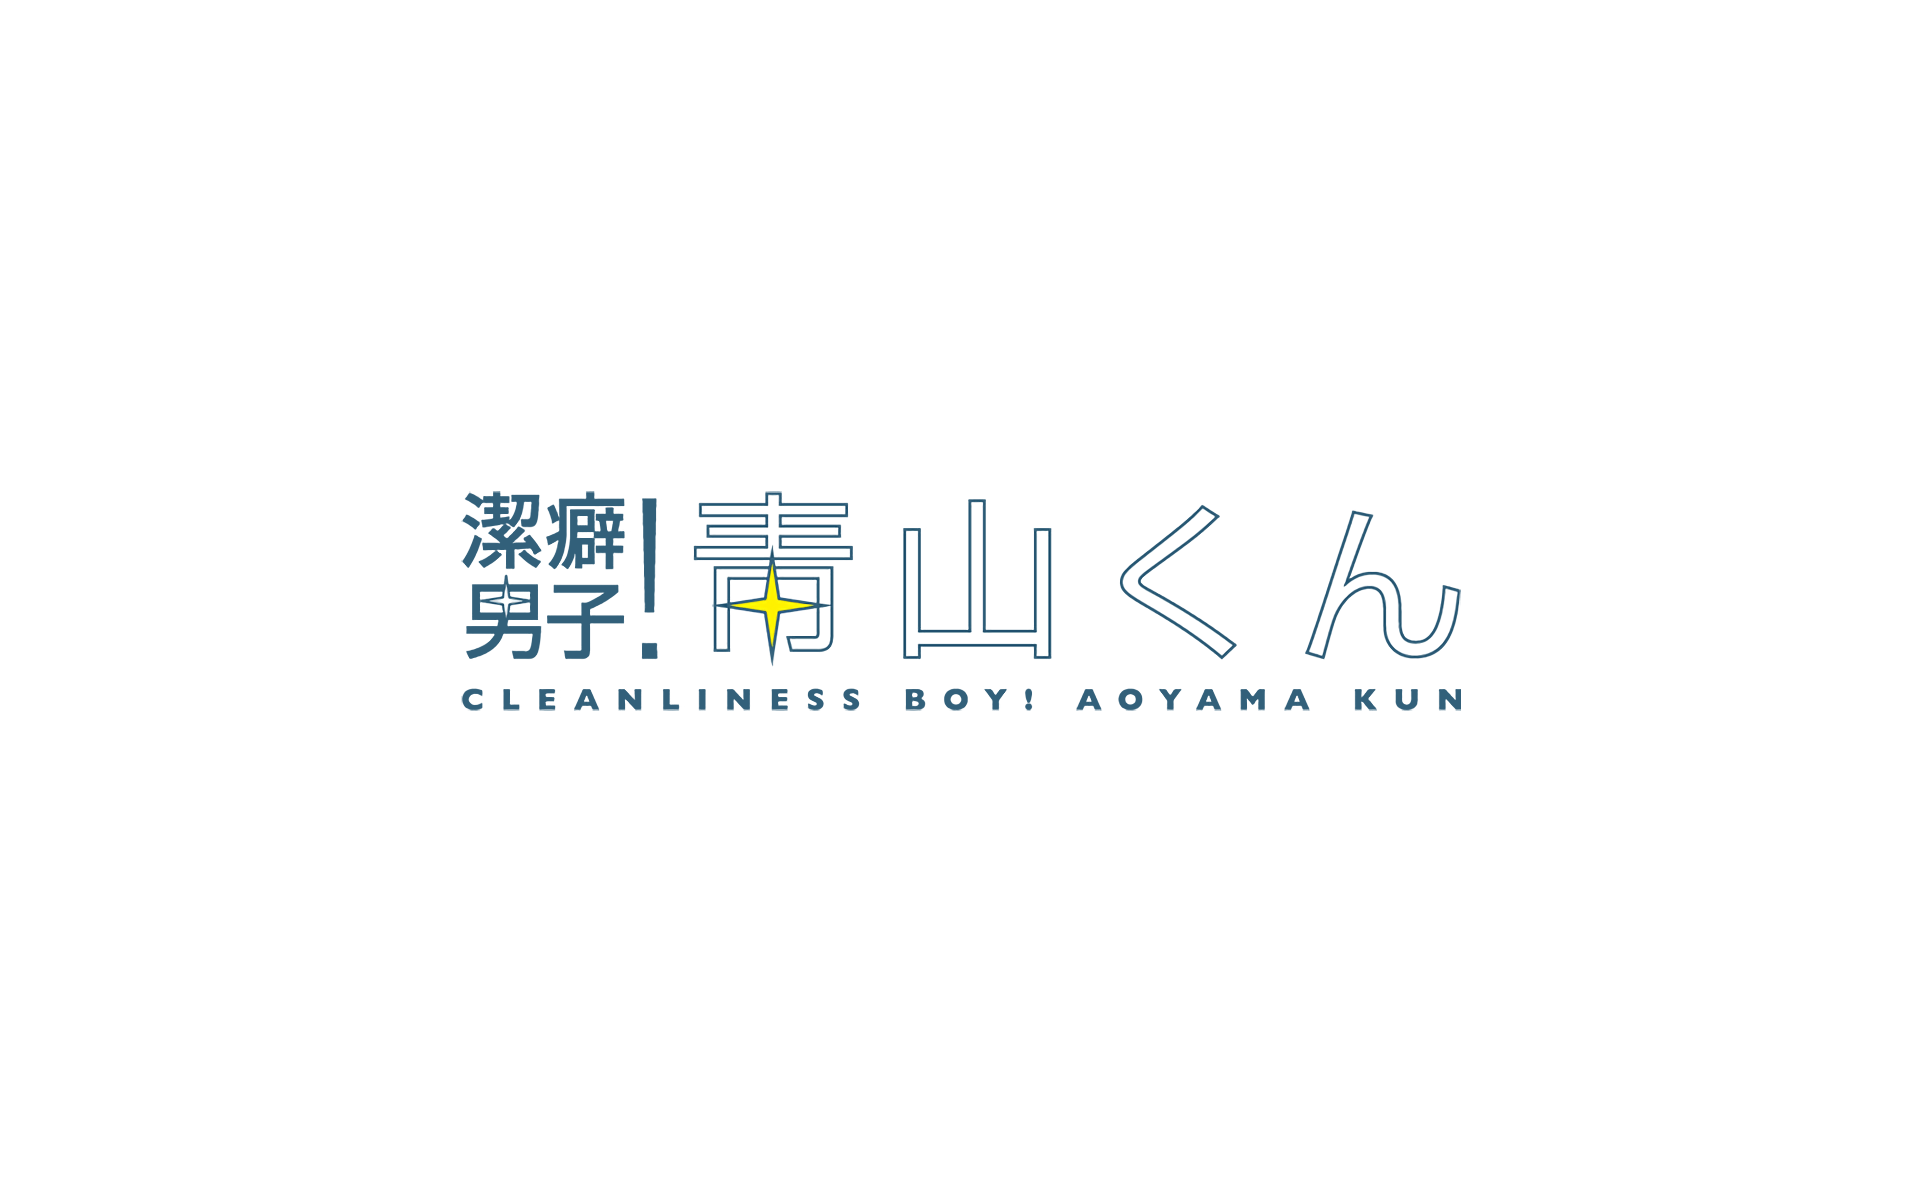 Aoyama-kun, Keppeki Danshi! Aoyama-kun ; Clean Freak! Aoyama-kun ;  Cleanliness Boy! Aoyama-kun